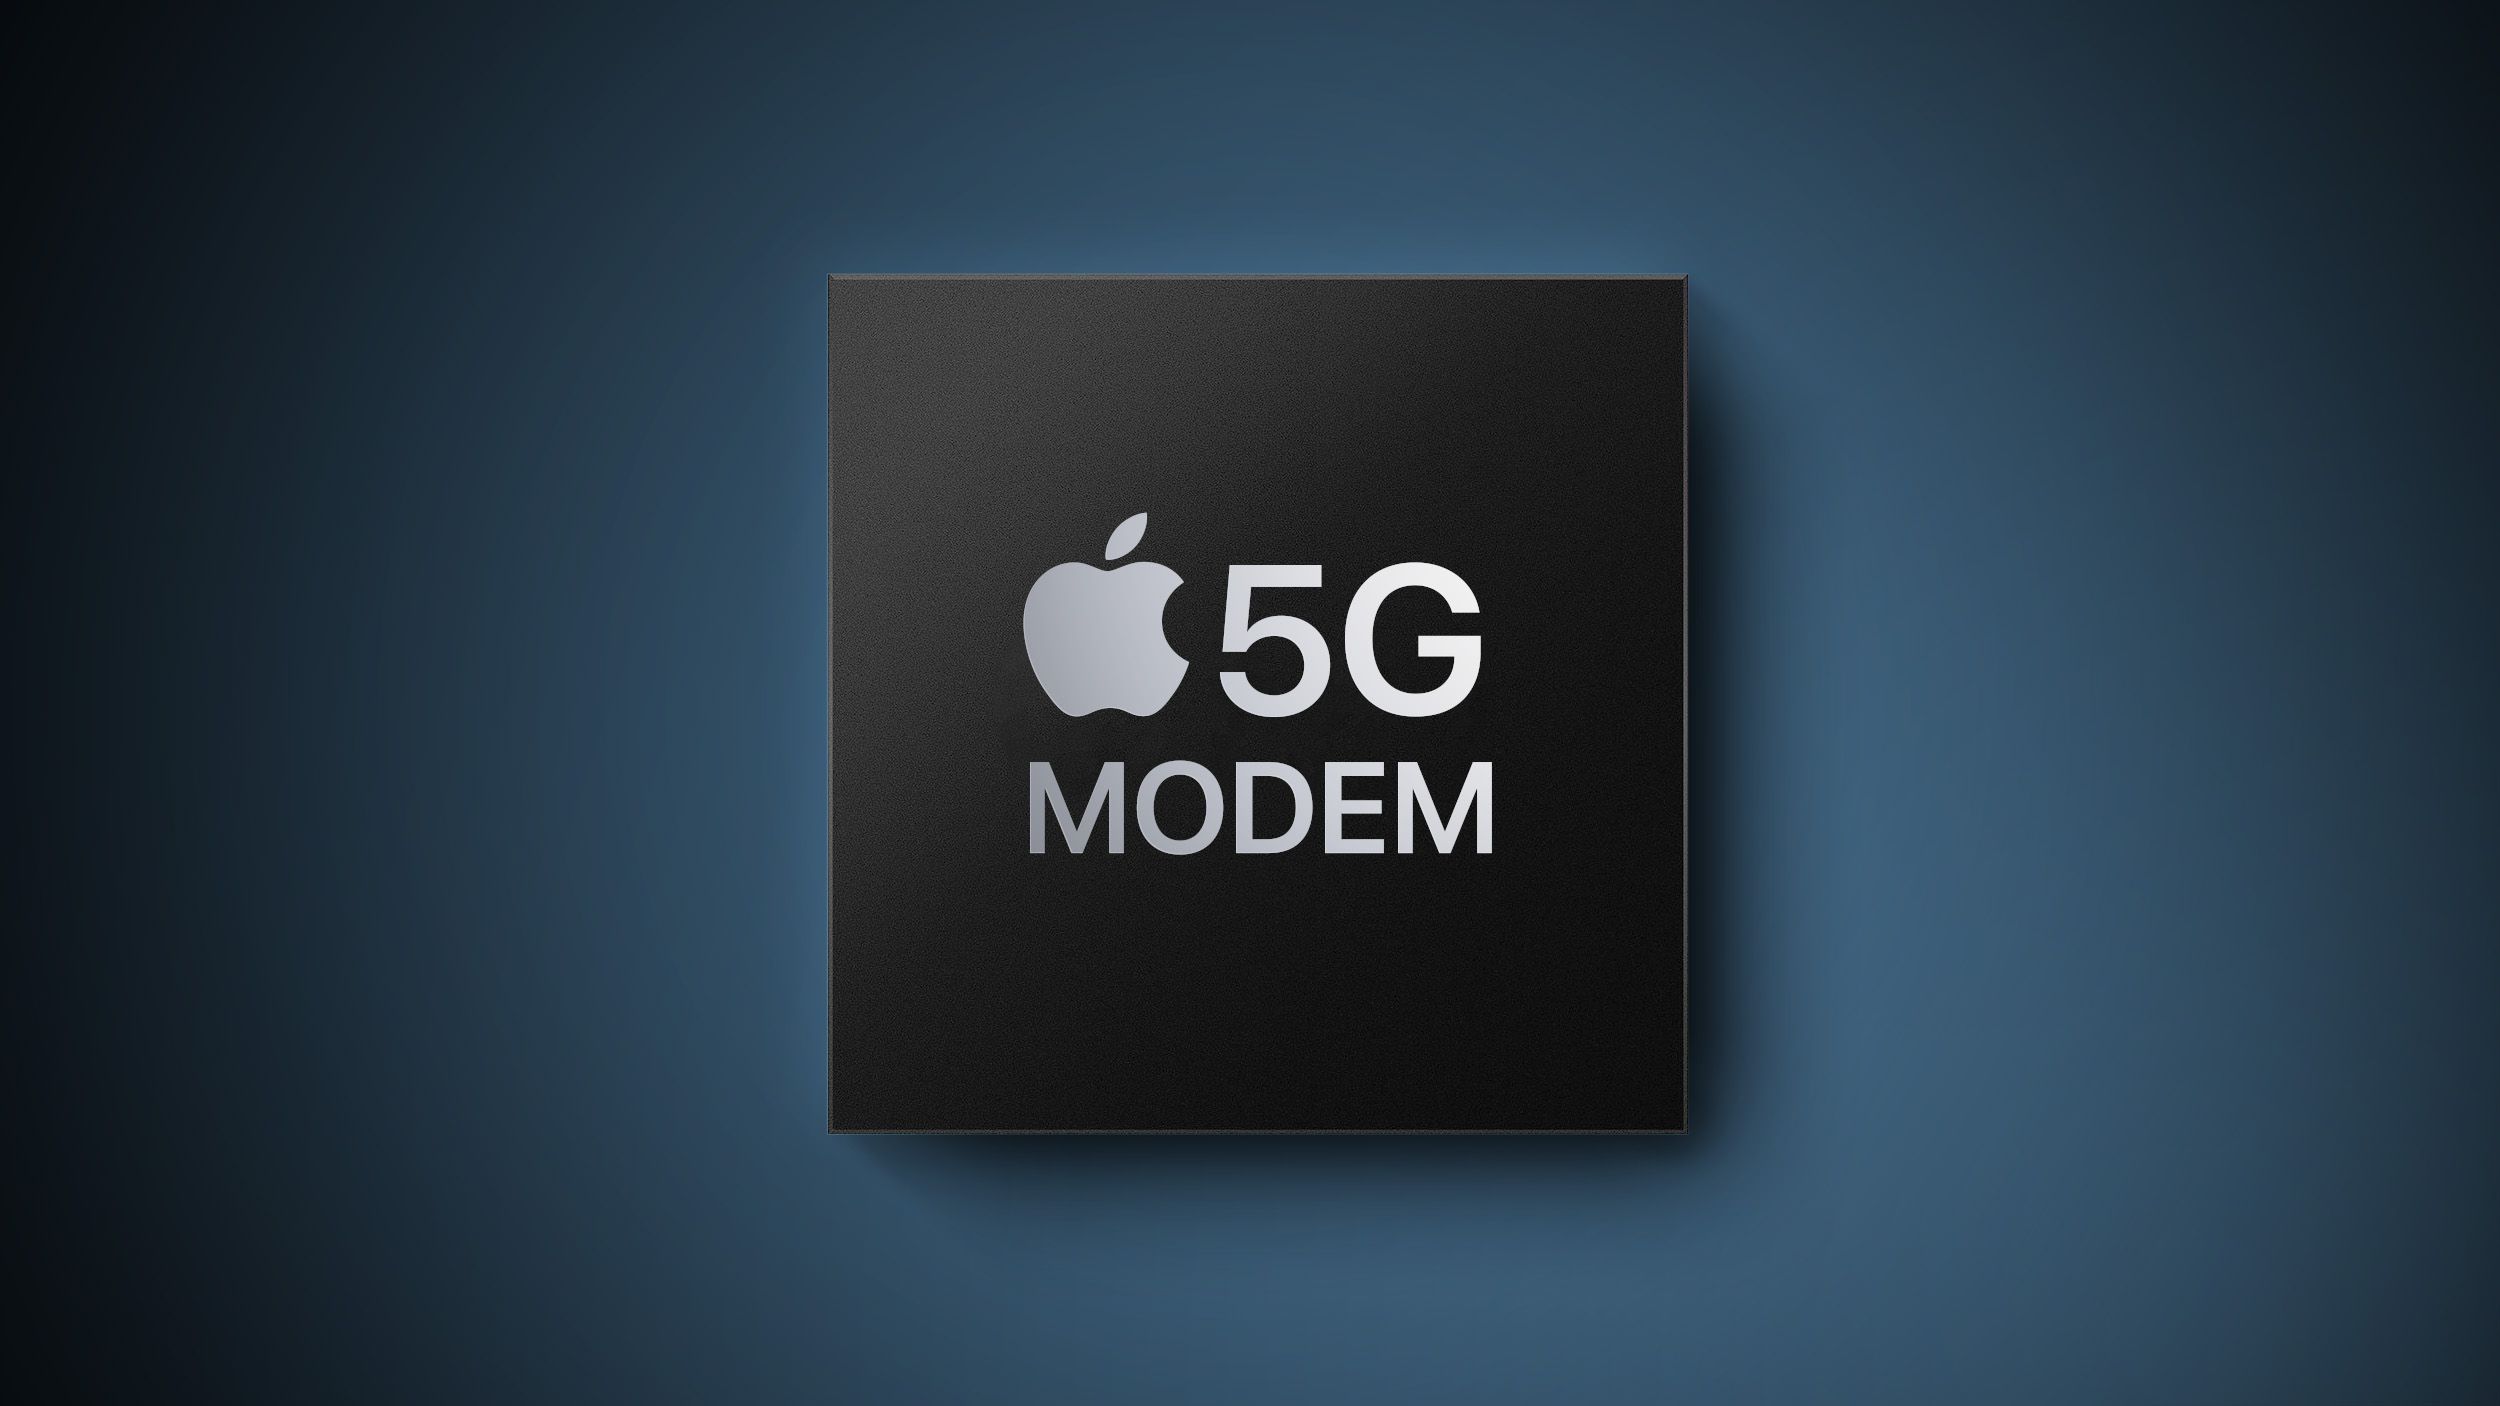 Se rumorea que el módem 5G de Apple para iPhone tiene proveedores compitiendo por pedidos